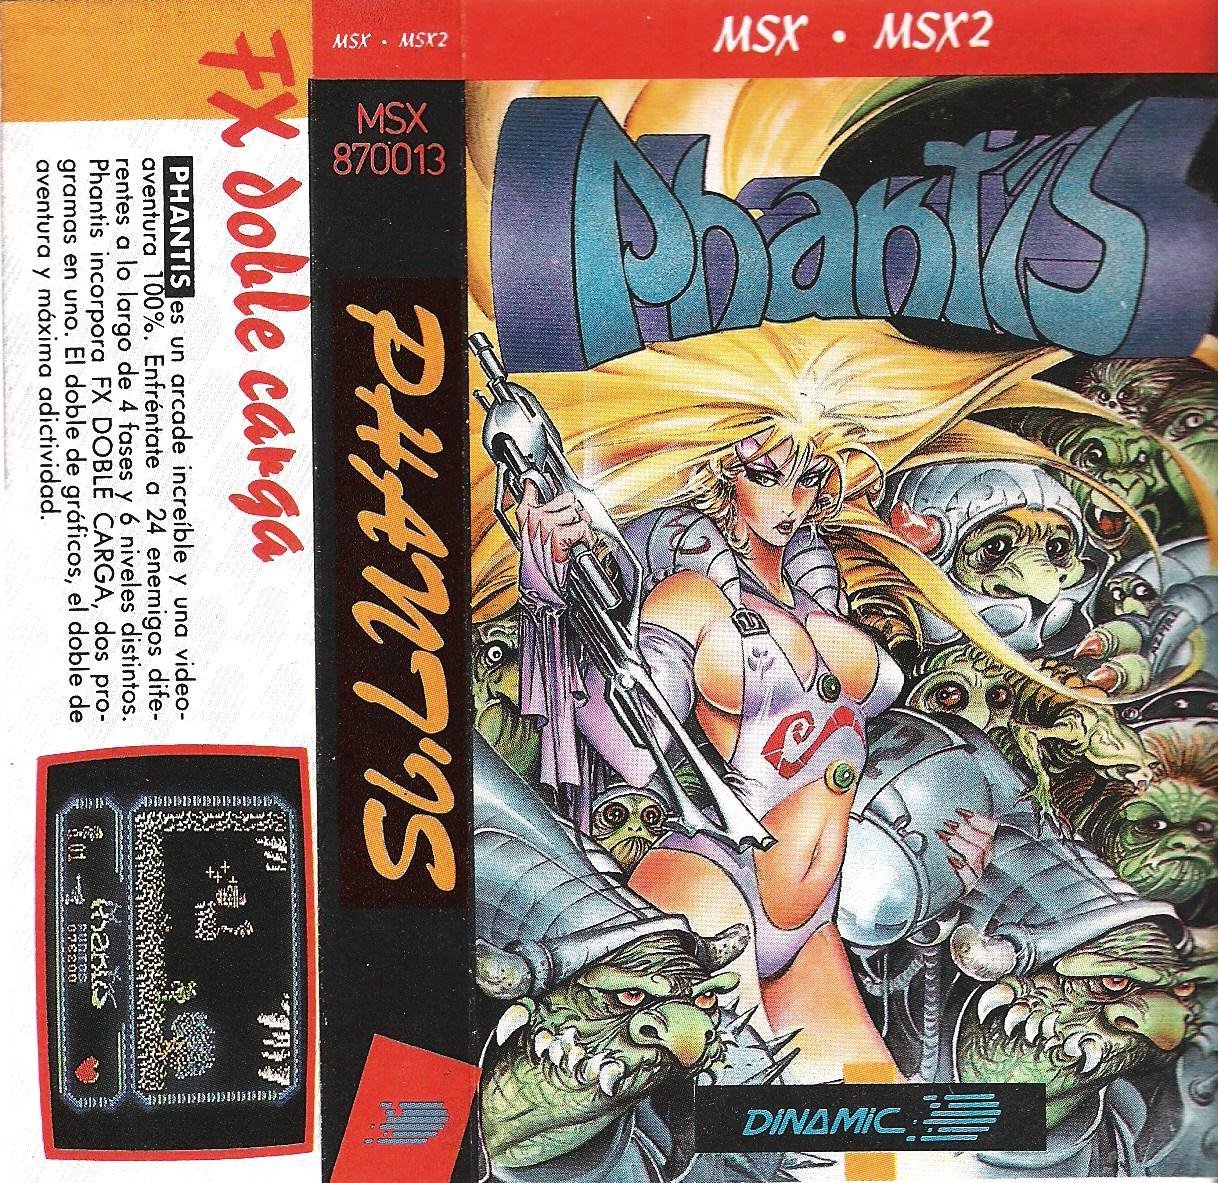 Caratula de Phantis para MSX